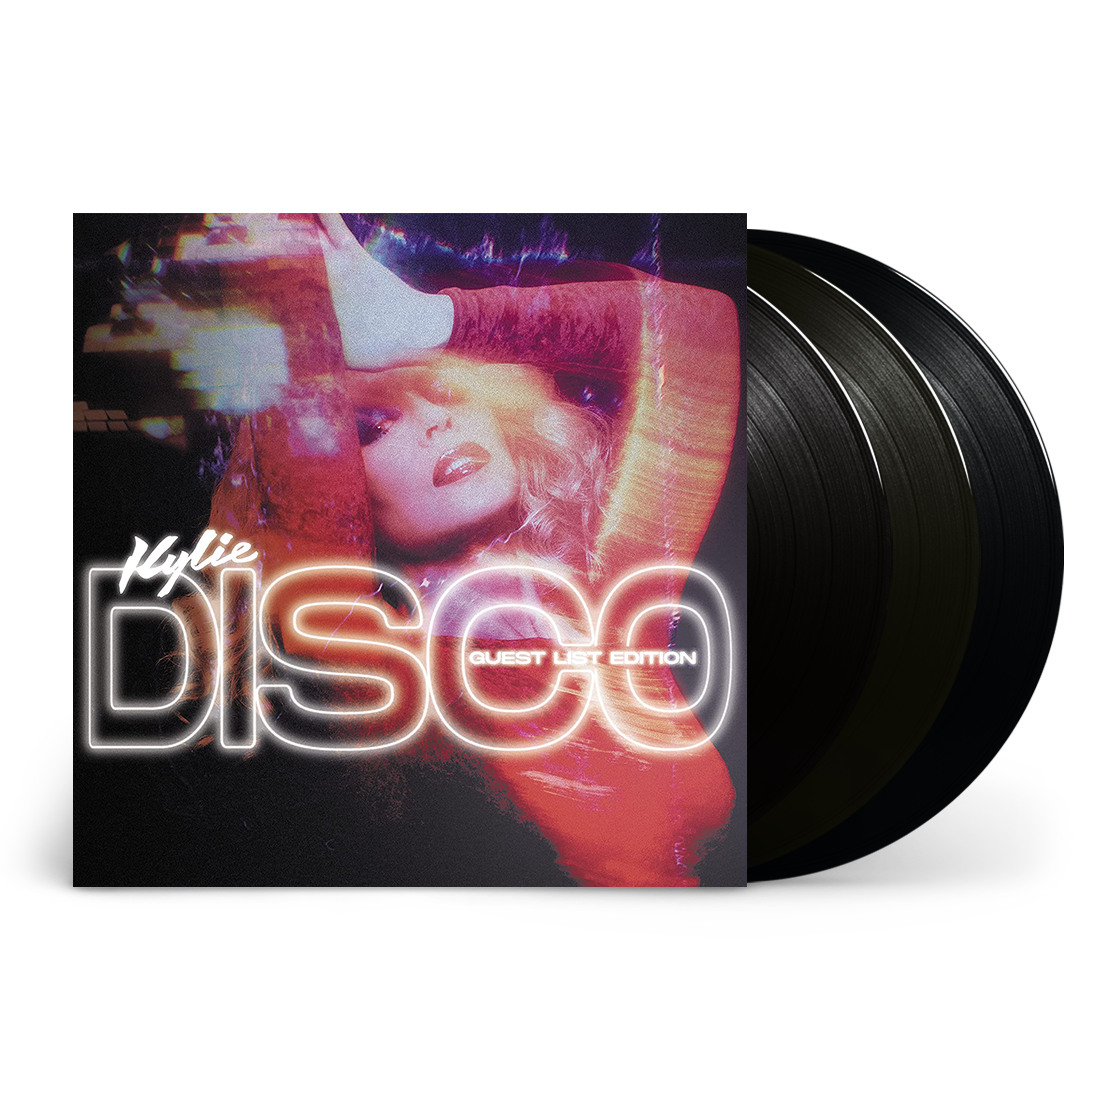 Disco: Guest List Edition Vinyl 3LP